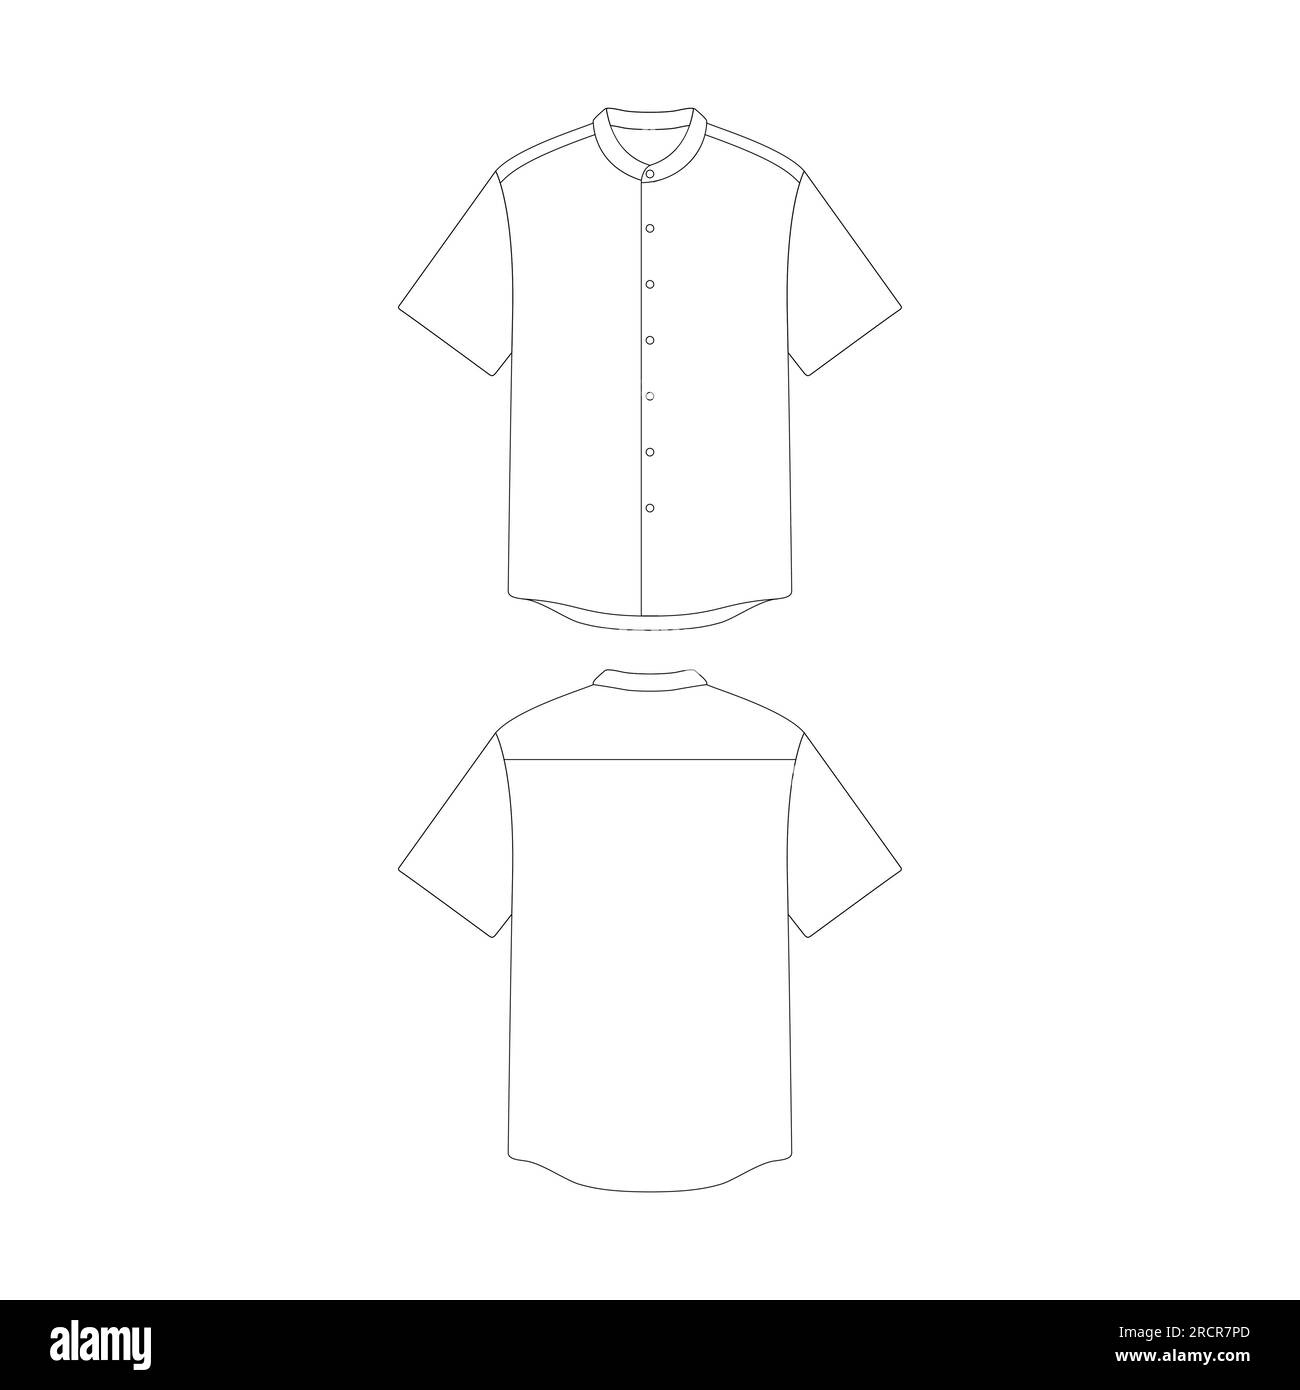 Template – Hemd mit Großvater-Kragen Vektorgrafik Bekleidungskollektion mit flachem Design Stock Vektor